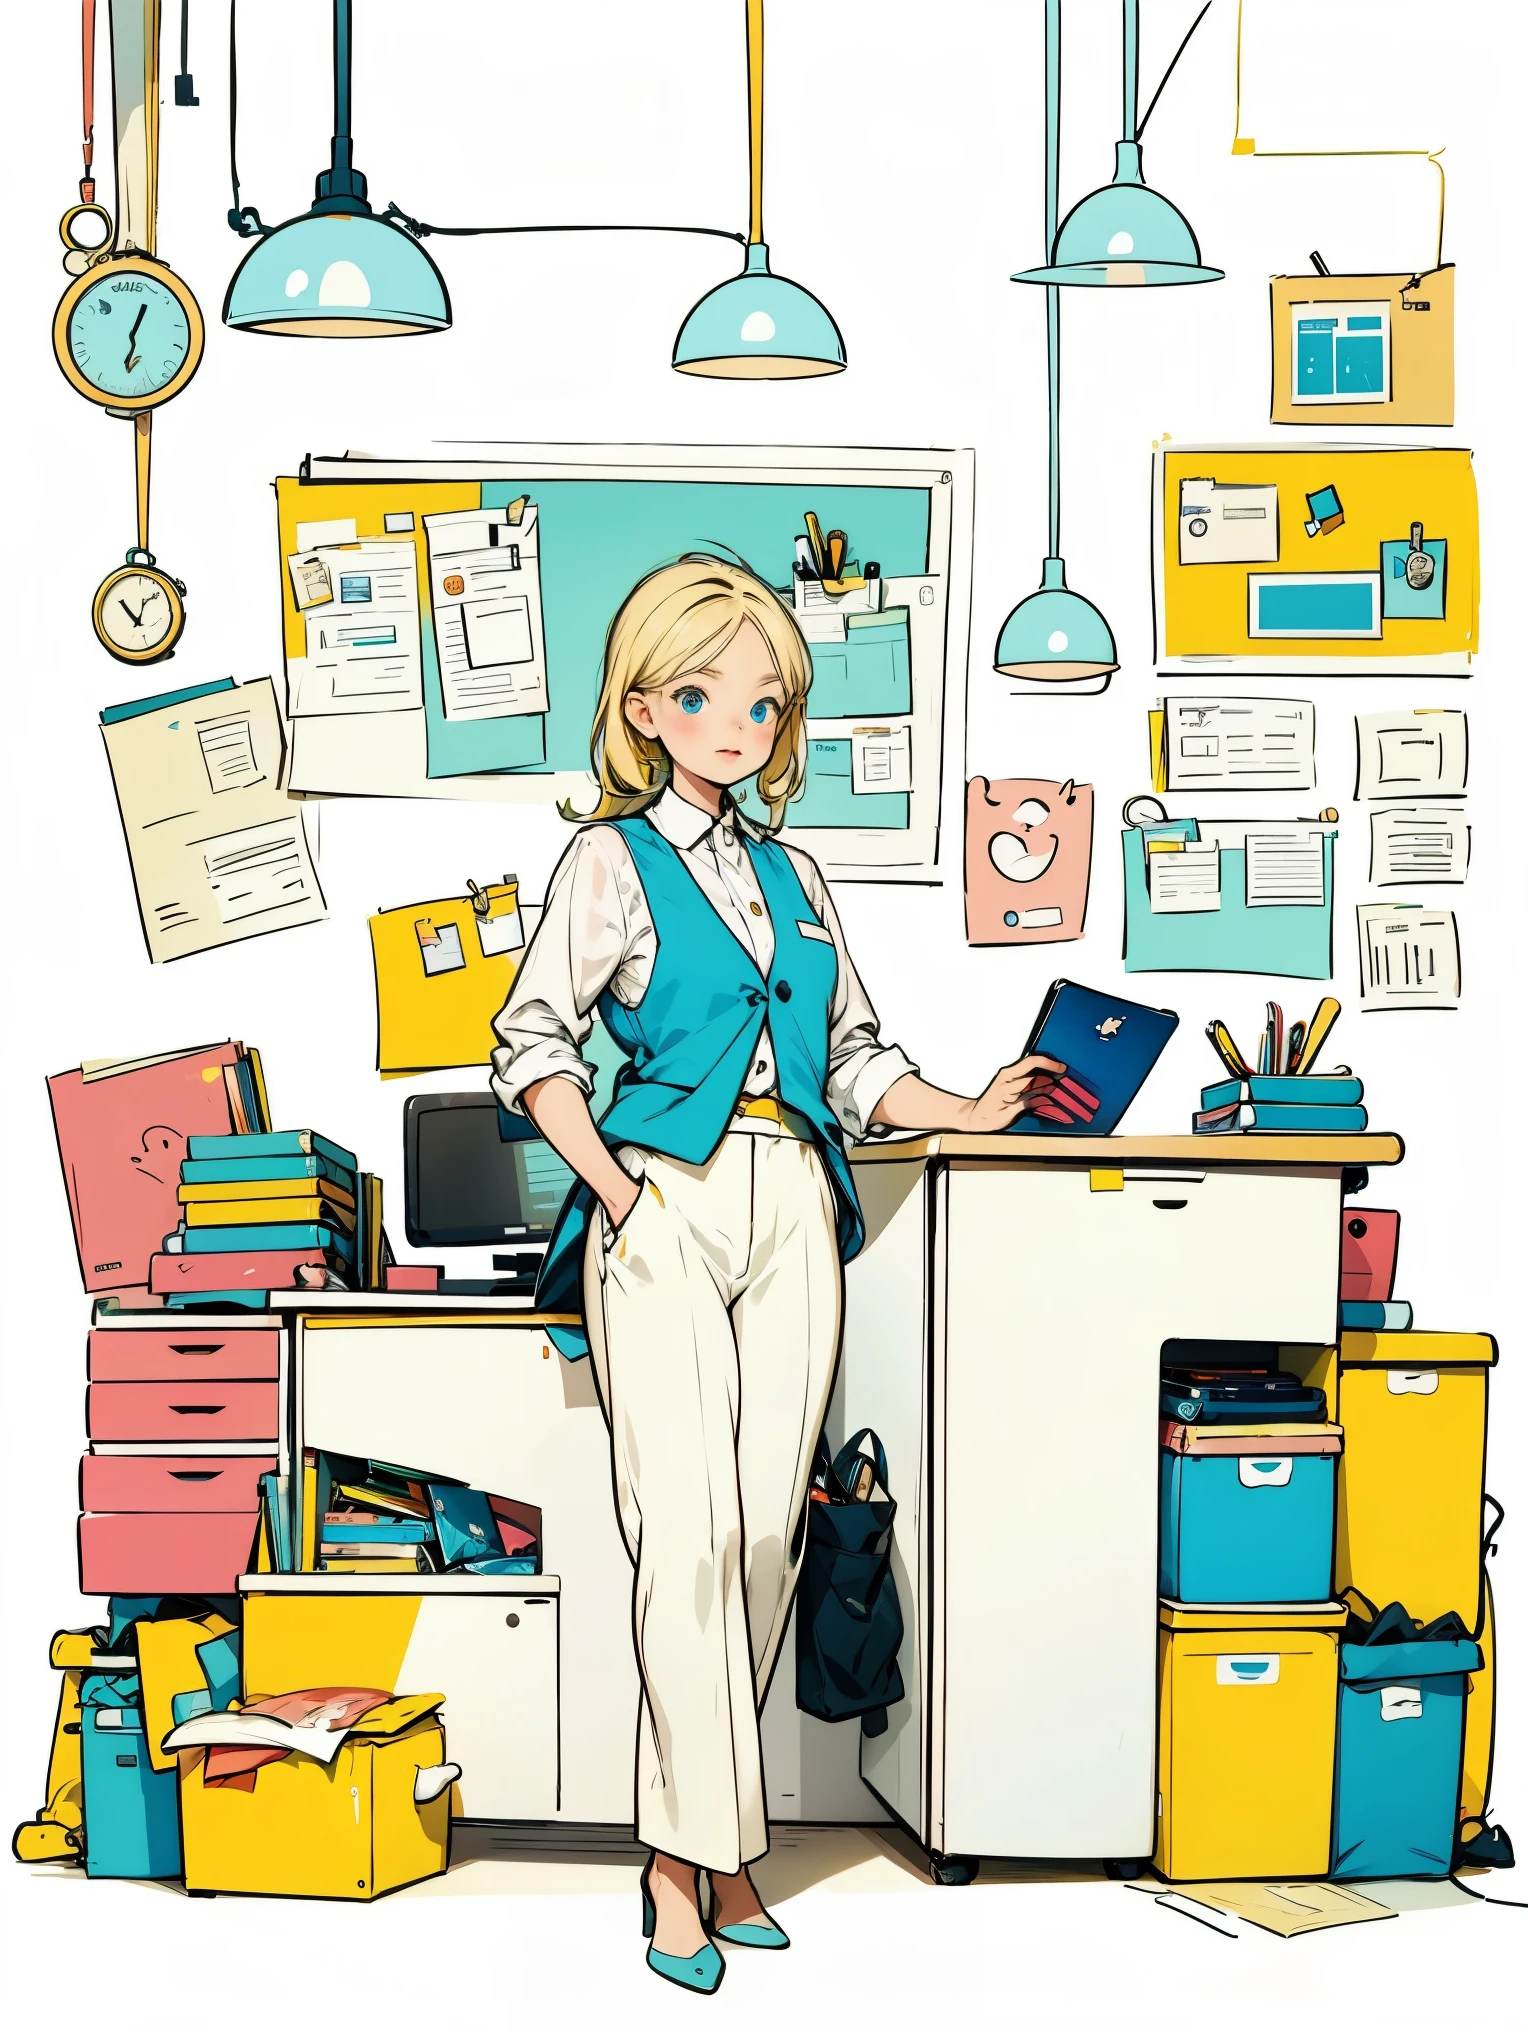 흰색 셔츠와 파란색 조끼를 입은 소녀 1명,바지,서 있는,사무실에서 일하다,긴 머리,웃다,간단한 배경